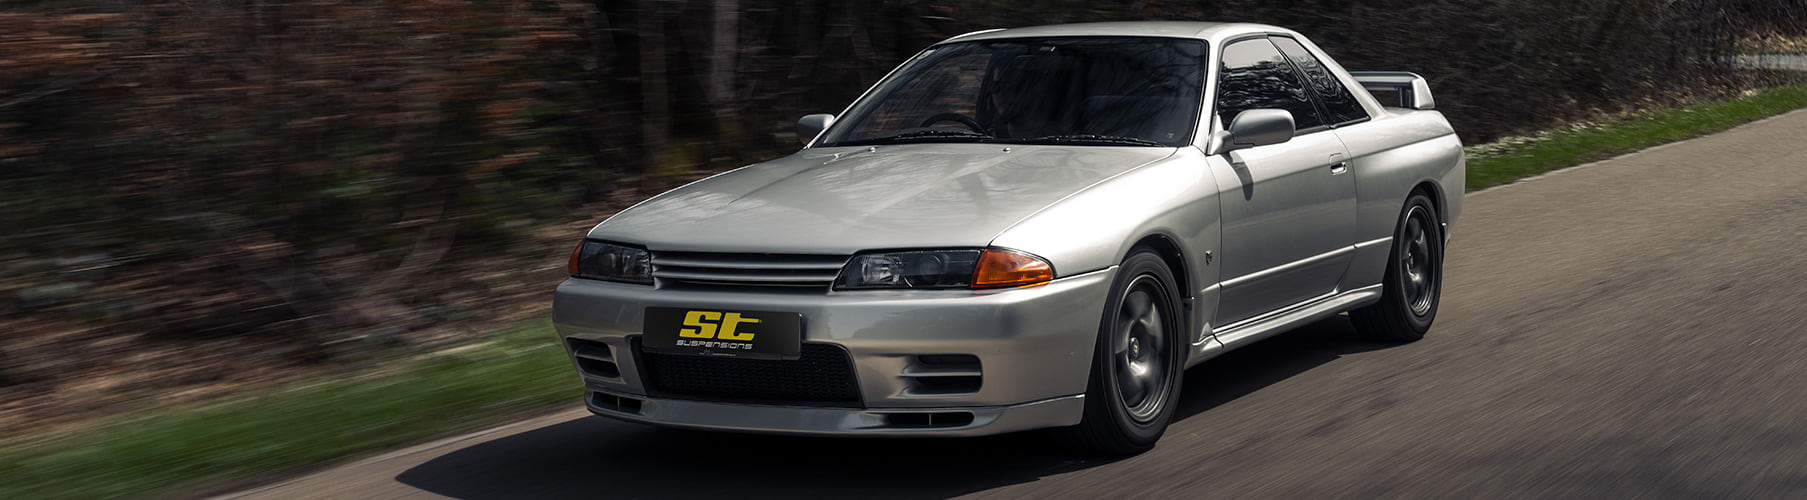 Perfekt für das sportliche Fahren auf der Straße ist das ST XTA plus 3 Gewindefahrwerk für den Nissan Skyline GT-R (R32) entwickelt worden.